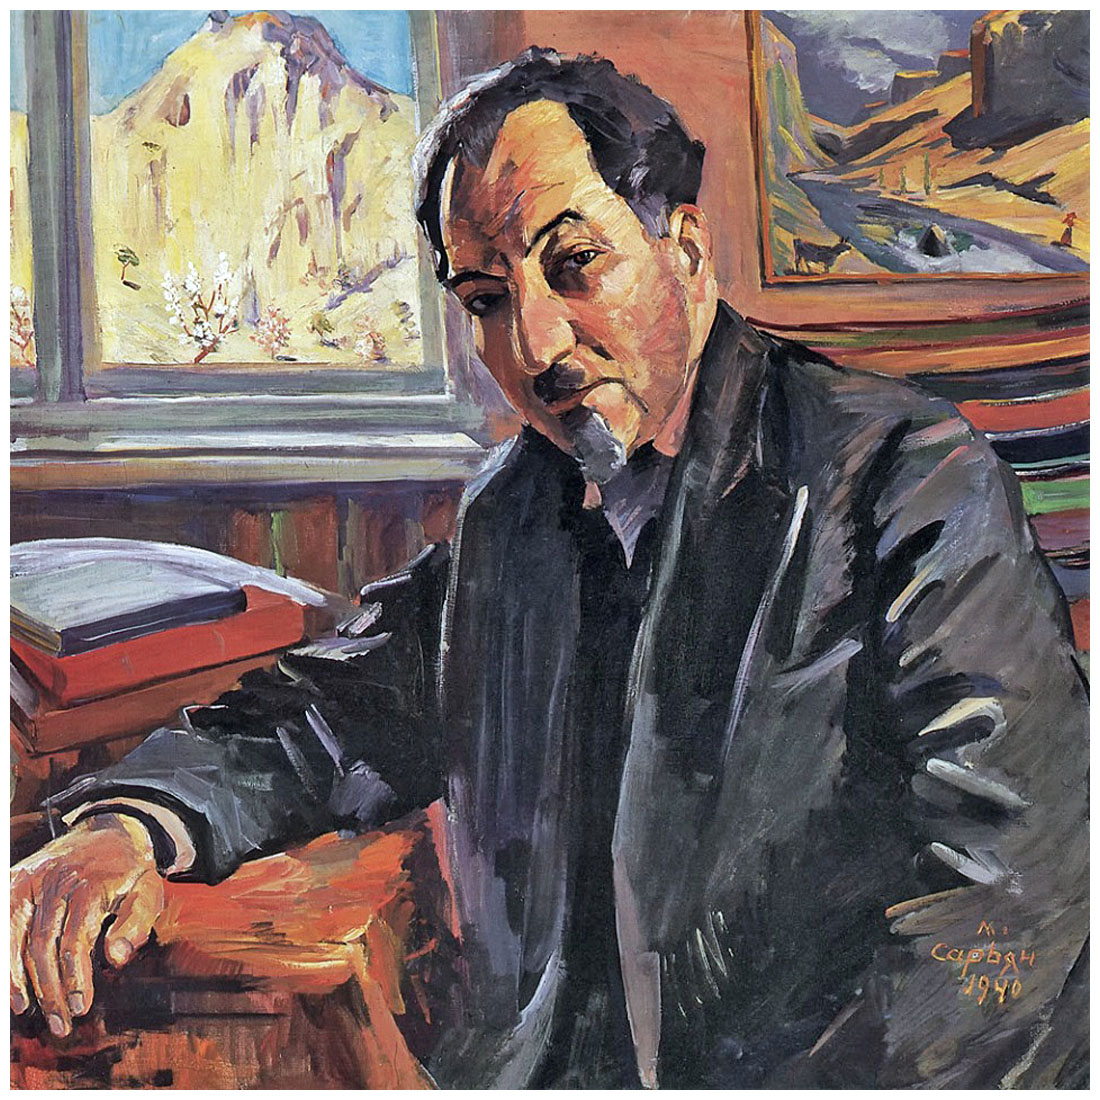 Мартирос Сарьян. Портрет А. Исаакяна. 1940. Картинная галерея, Ереван